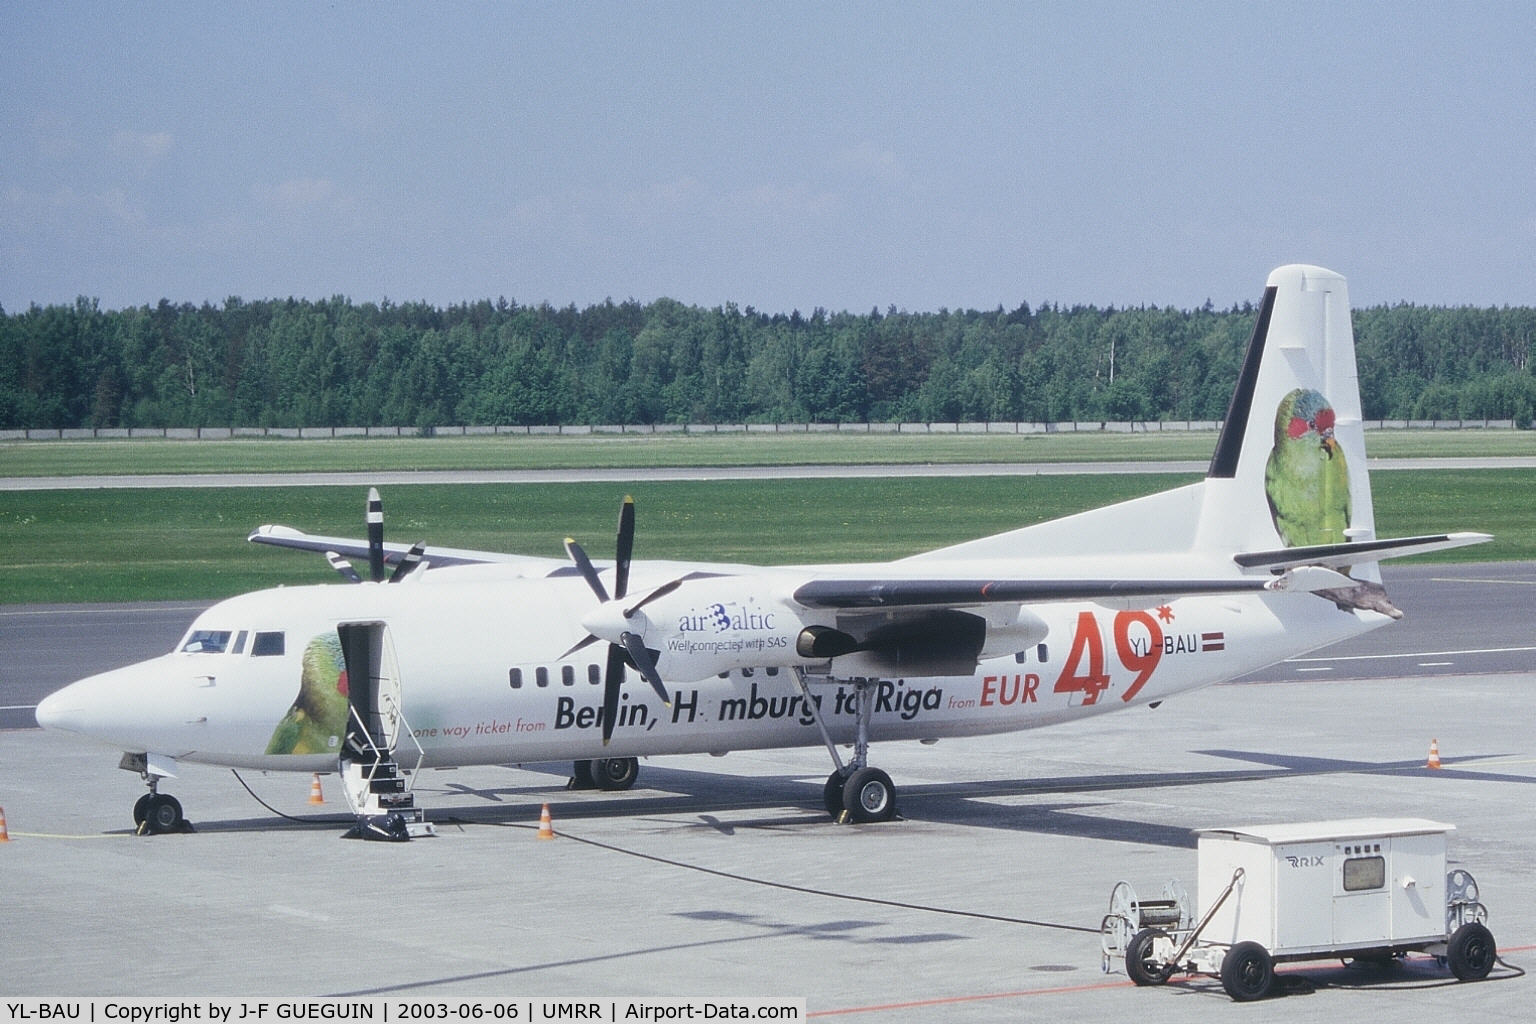 YL-BAU, 1988 Fokker 50 C/N 20126, Fokker 50 YL-BAU parked at Riga airport (Latvia).